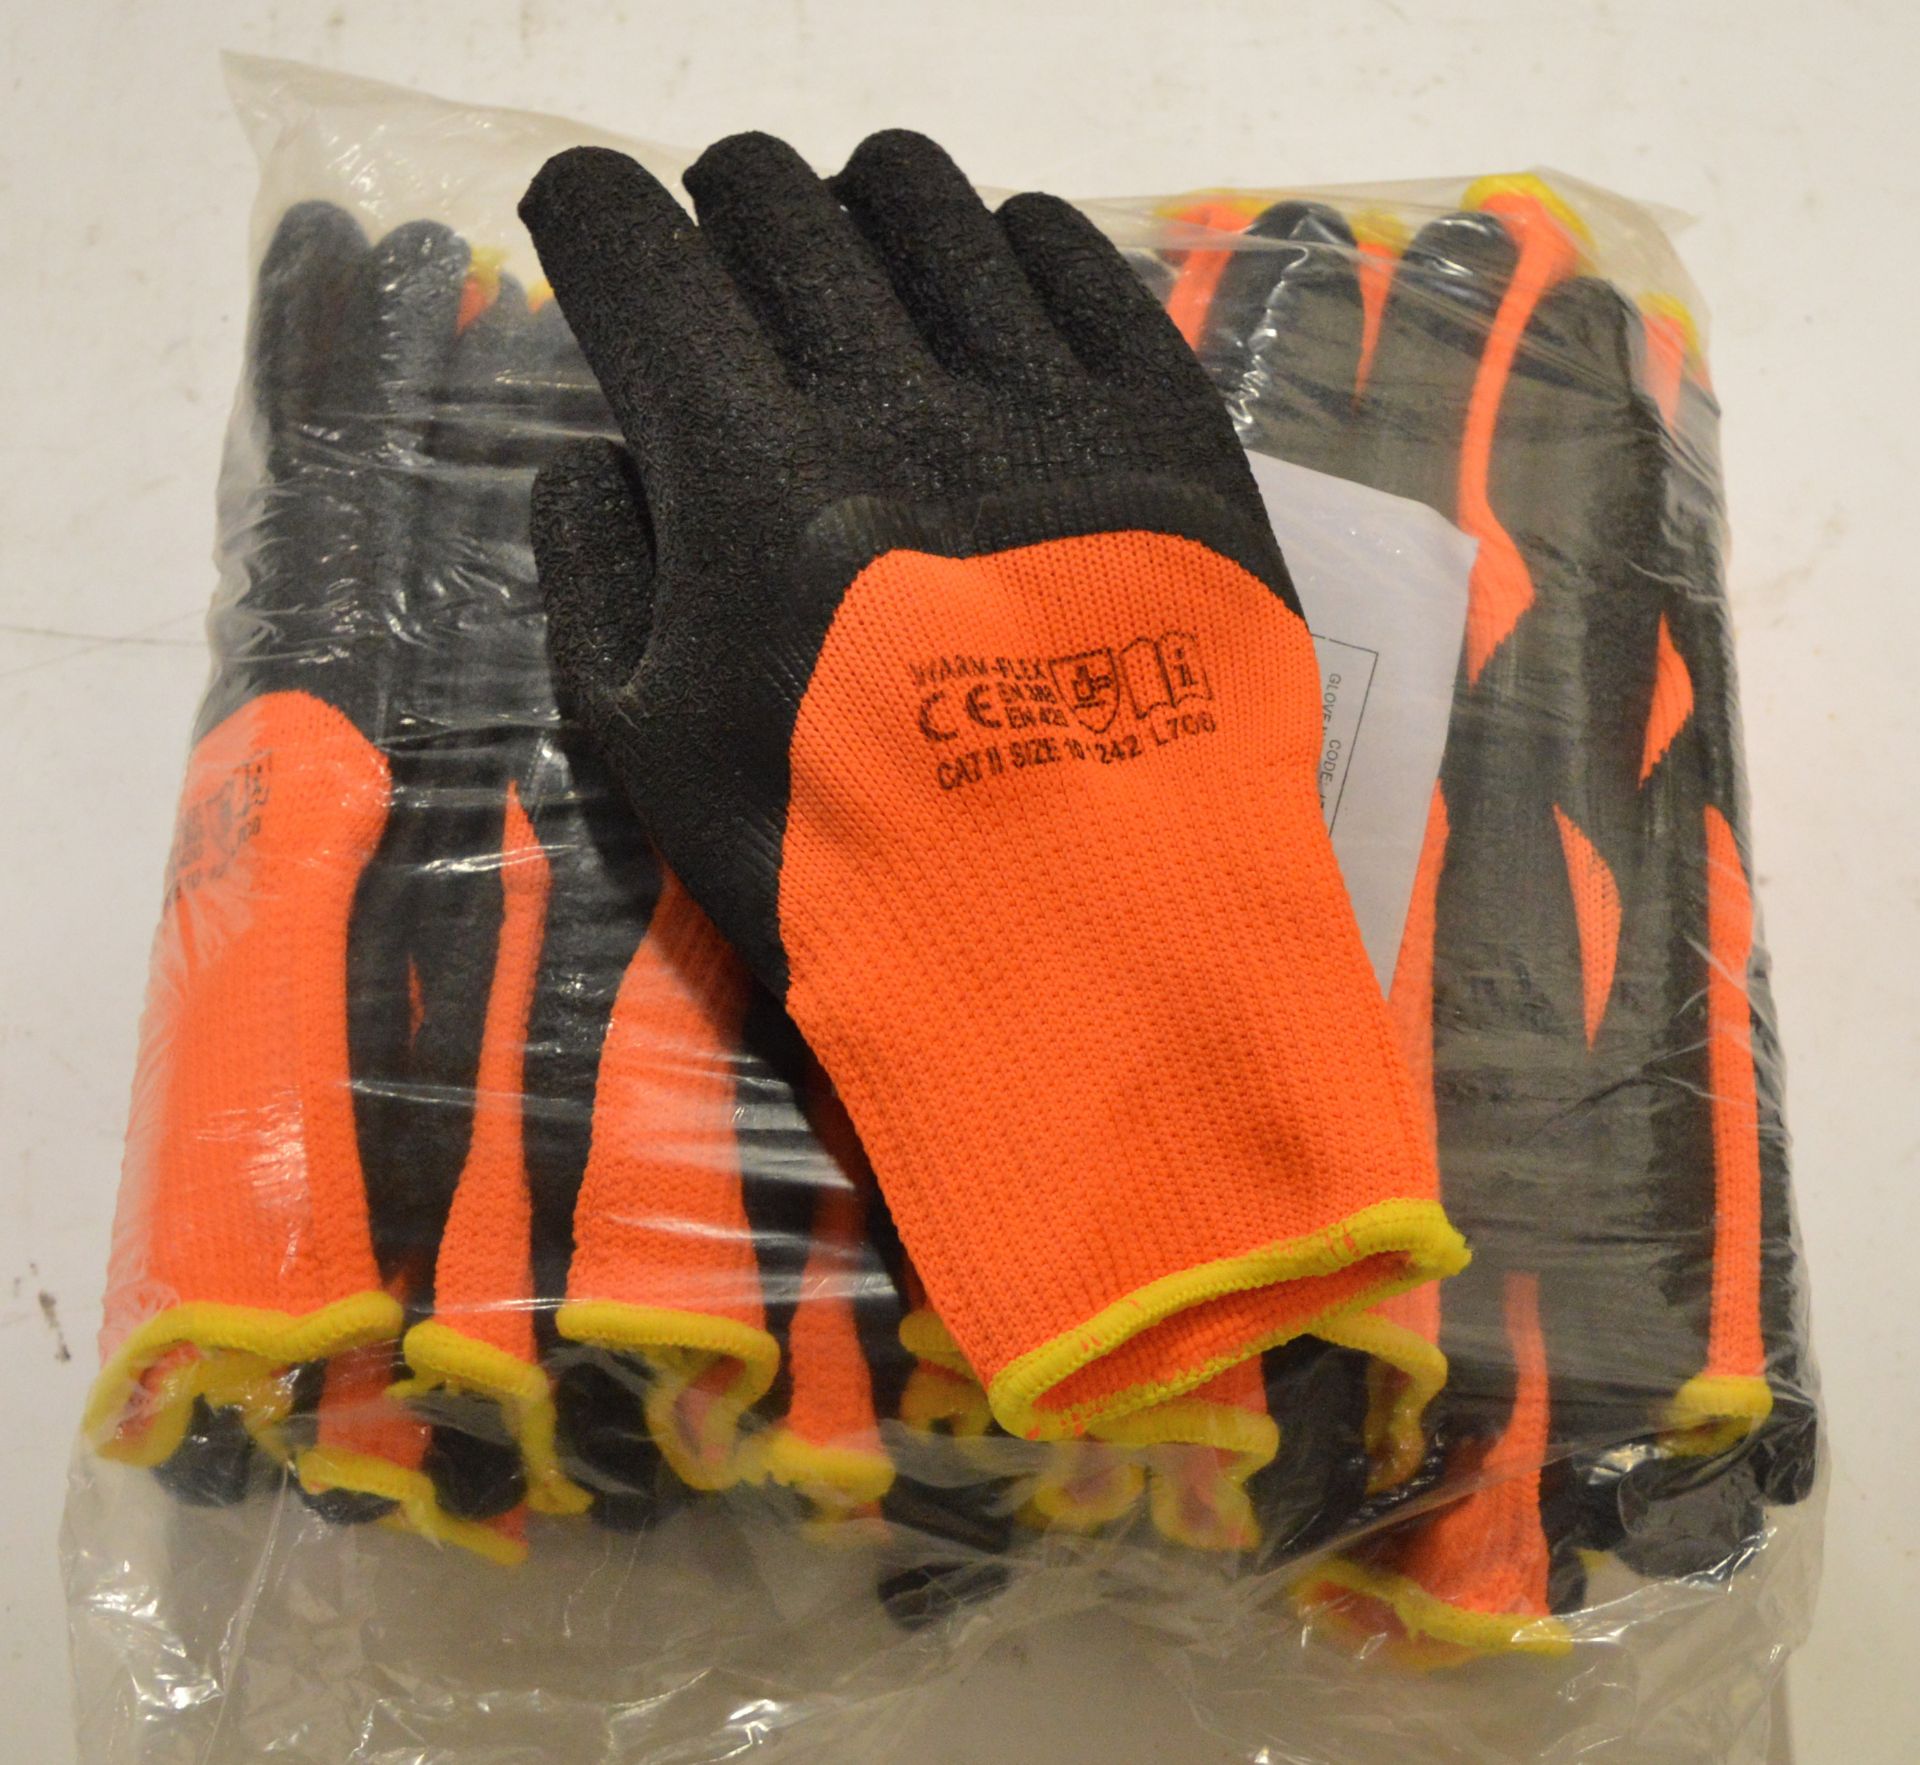 12x Pair Gloves - Size 10.